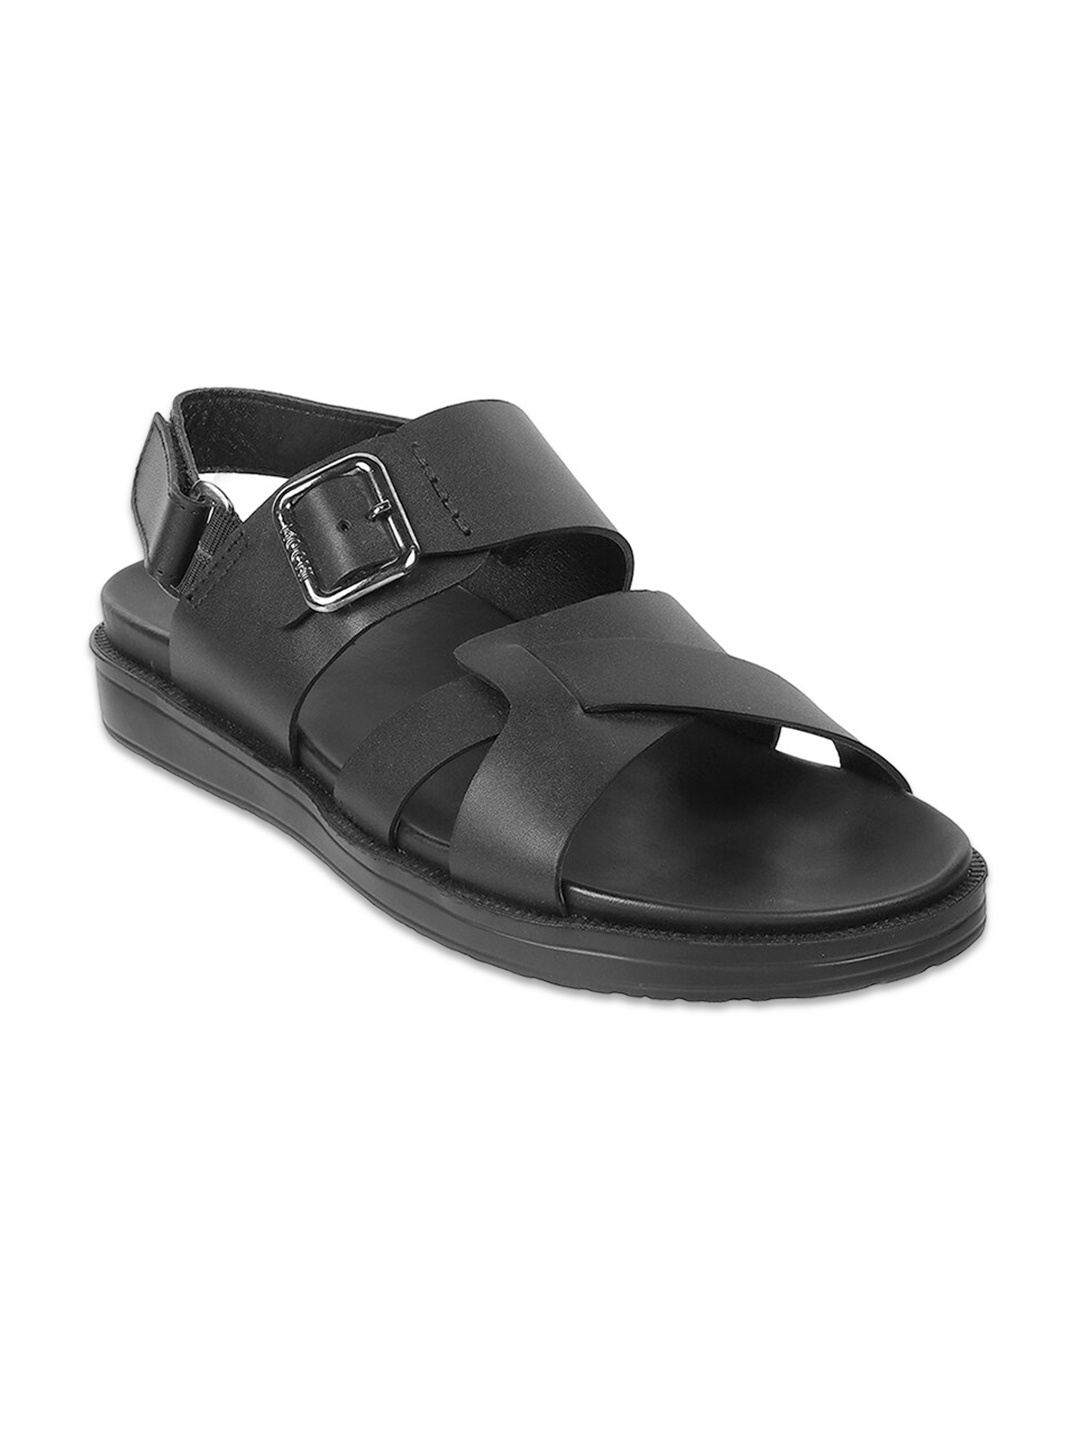 

Mochi Men Black Leather Comfort Sandals